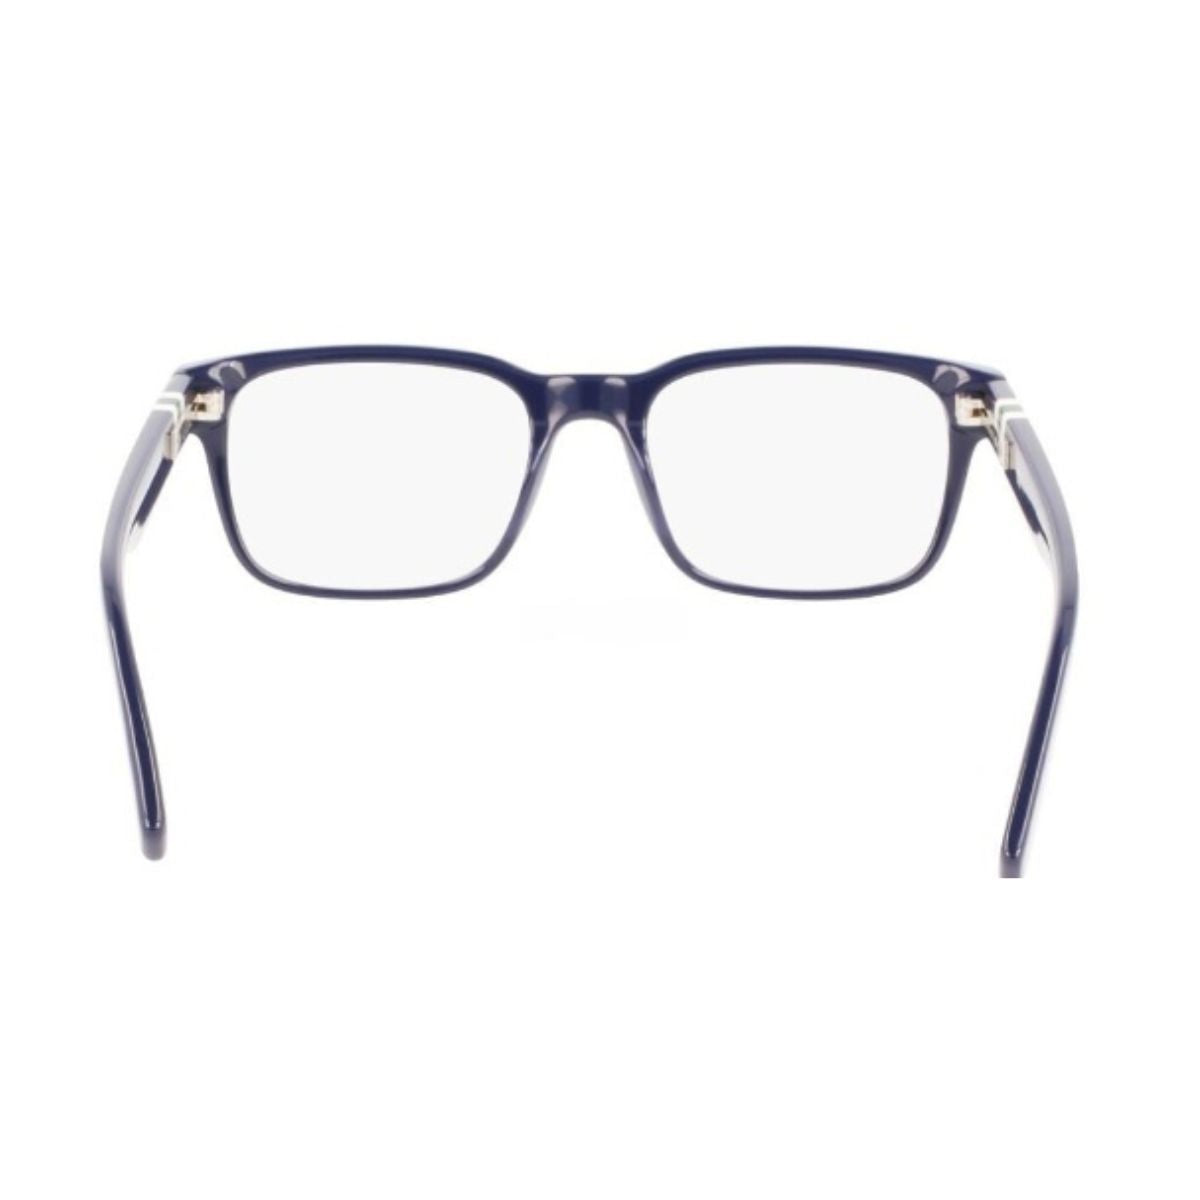 "best Lacoste 2905 400 eyesight & prescription glasses frame for men and women at optorium'